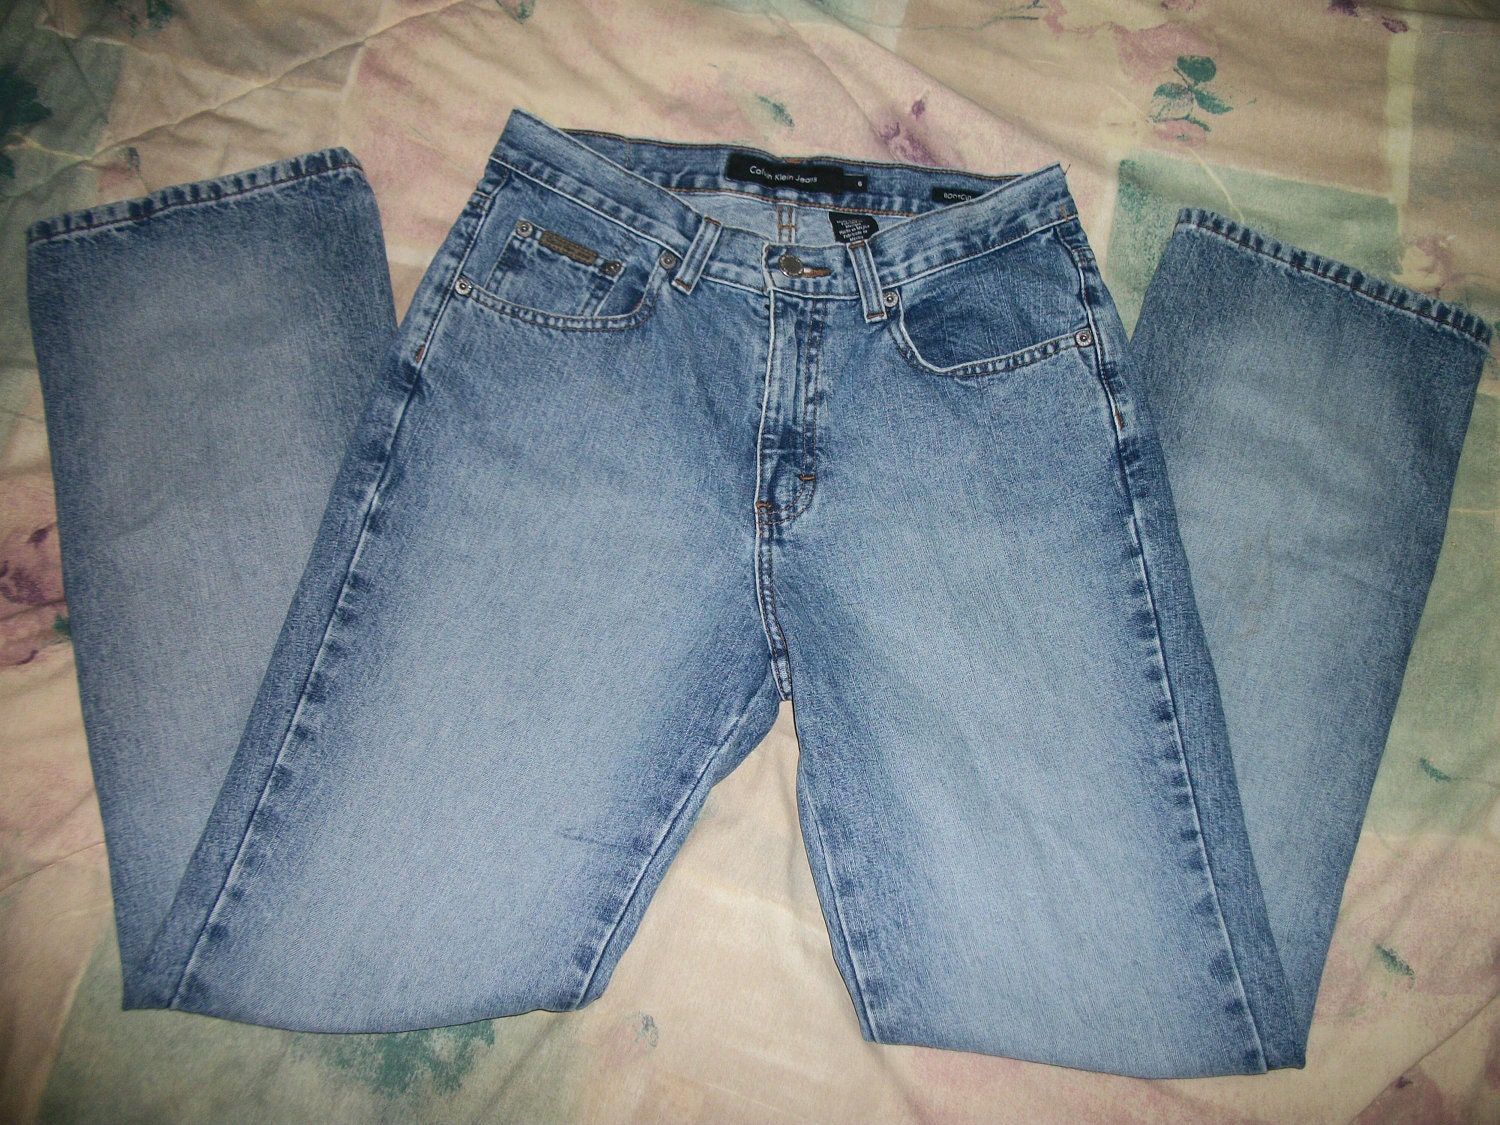 Size 0 Jeans Measurements